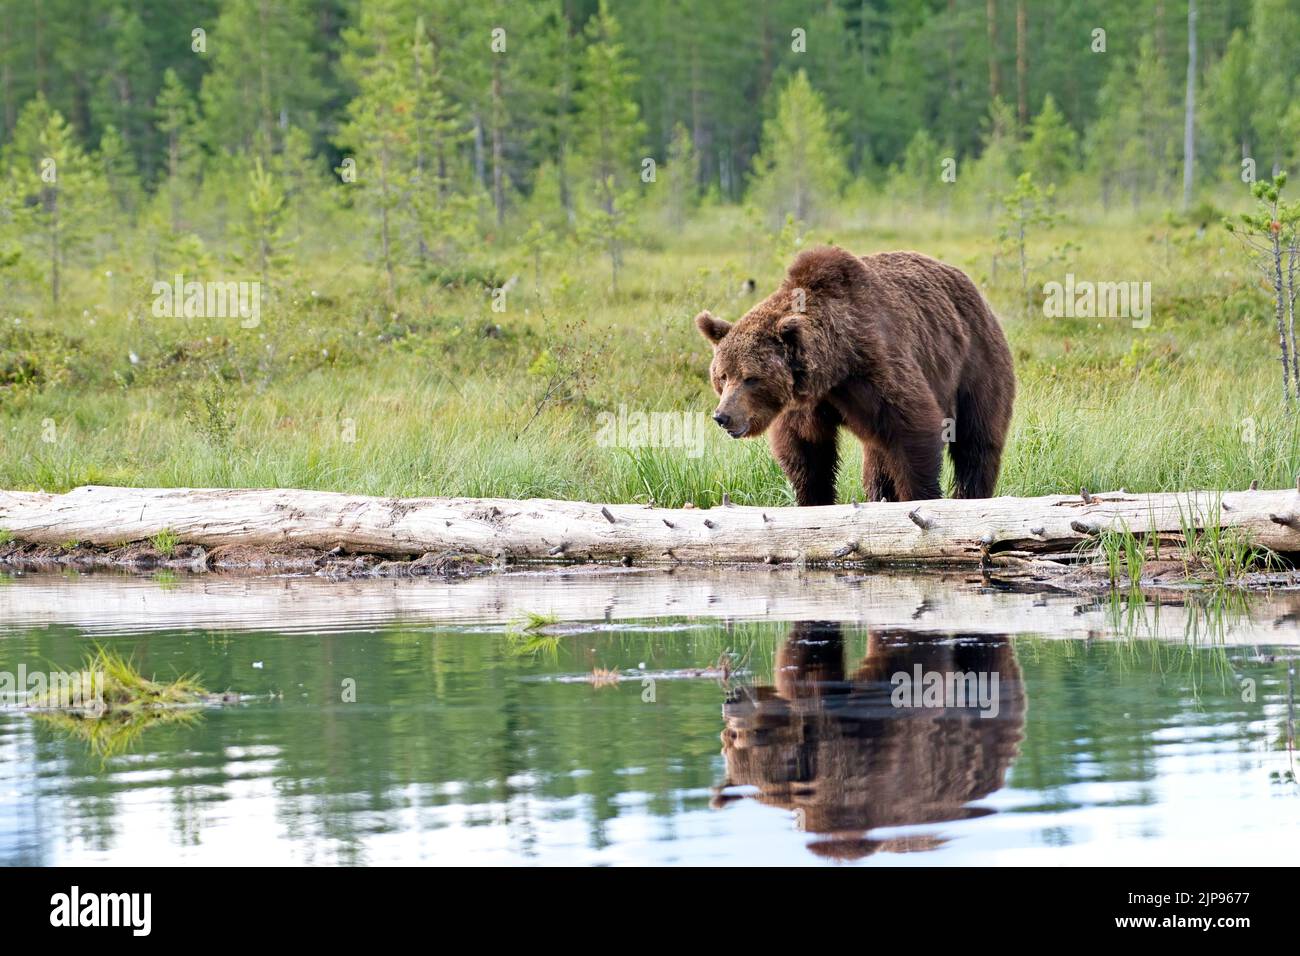 Oso pardo (Ursus arctos) reflejado en un estanque boscoso en el bosque boreal o taiga de Finlandia Foto de stock